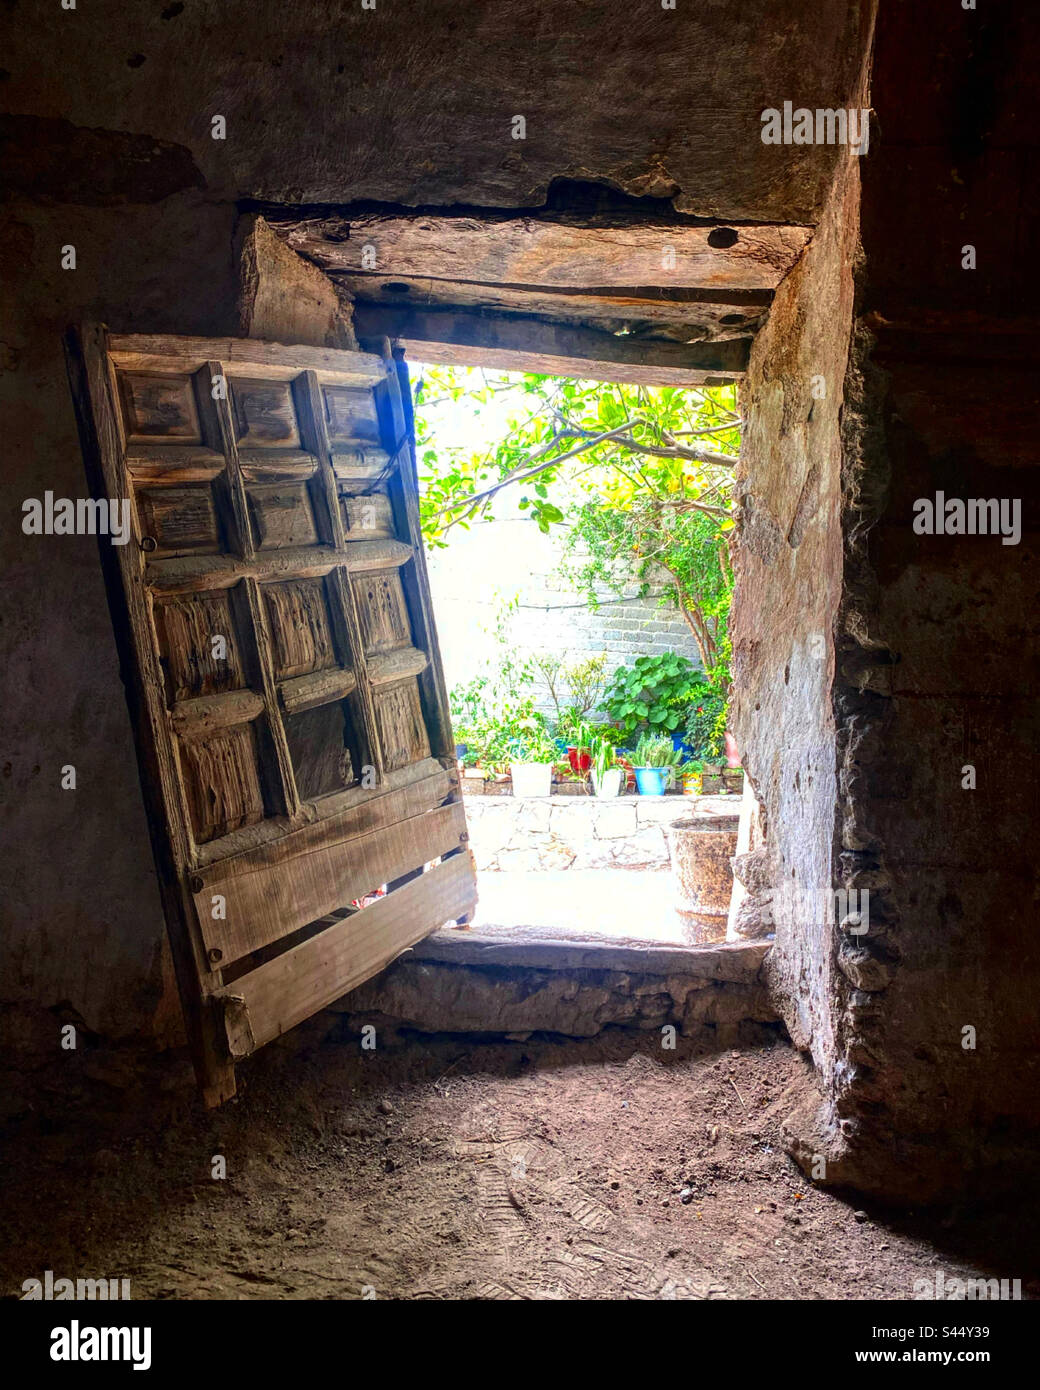 An old wooden door open in the Capilla de los Olvera, San Antonio de la Cal, Toliman, Queretaro, Mexico Stock Photo